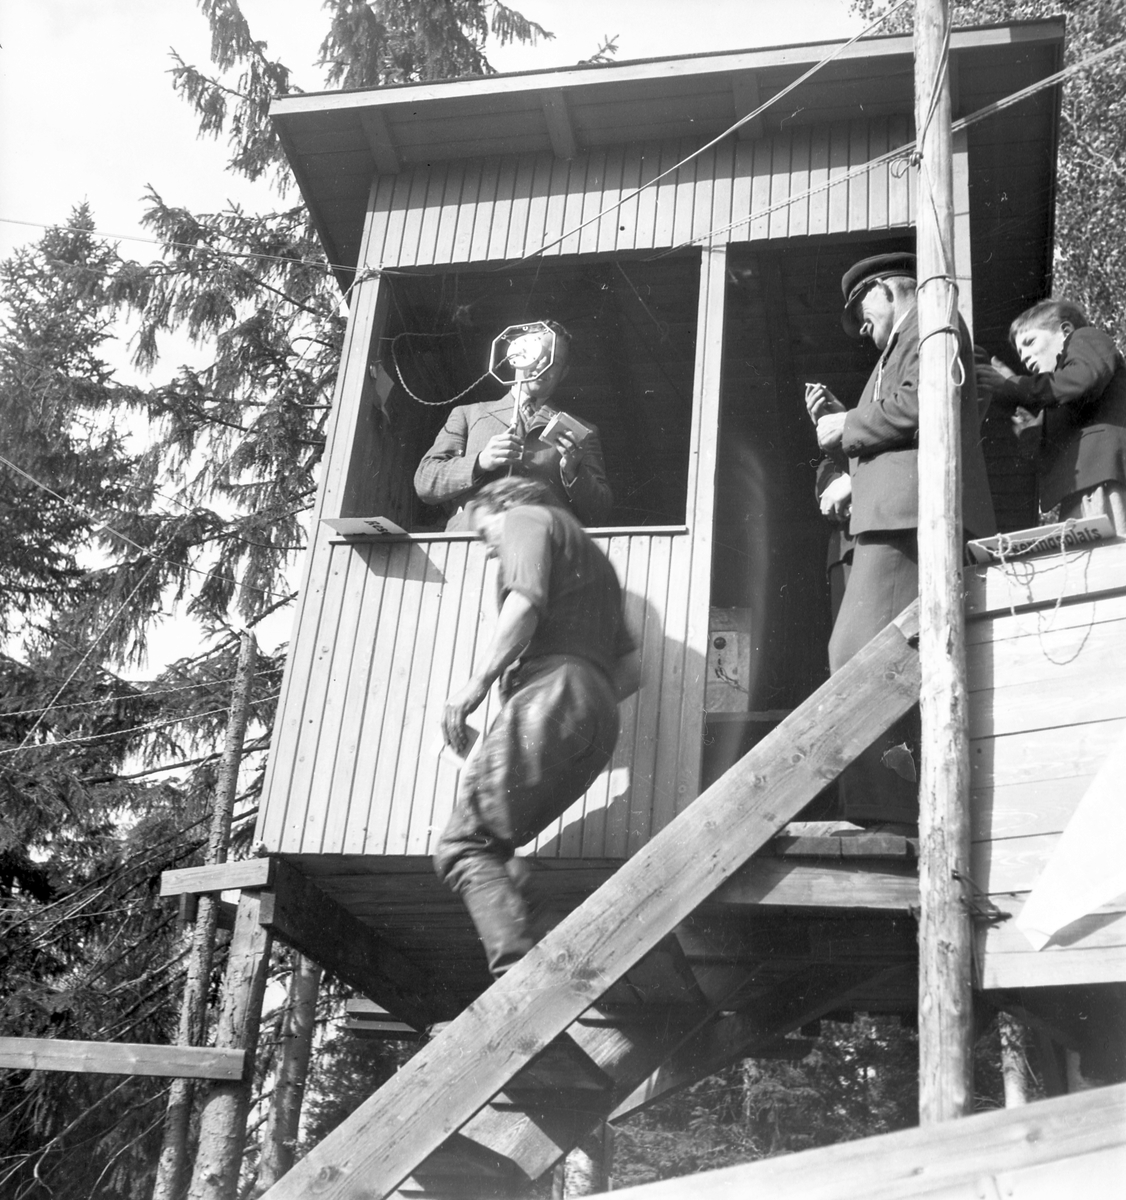 Kungsbergs backen. Motortävlingar. År 1936

